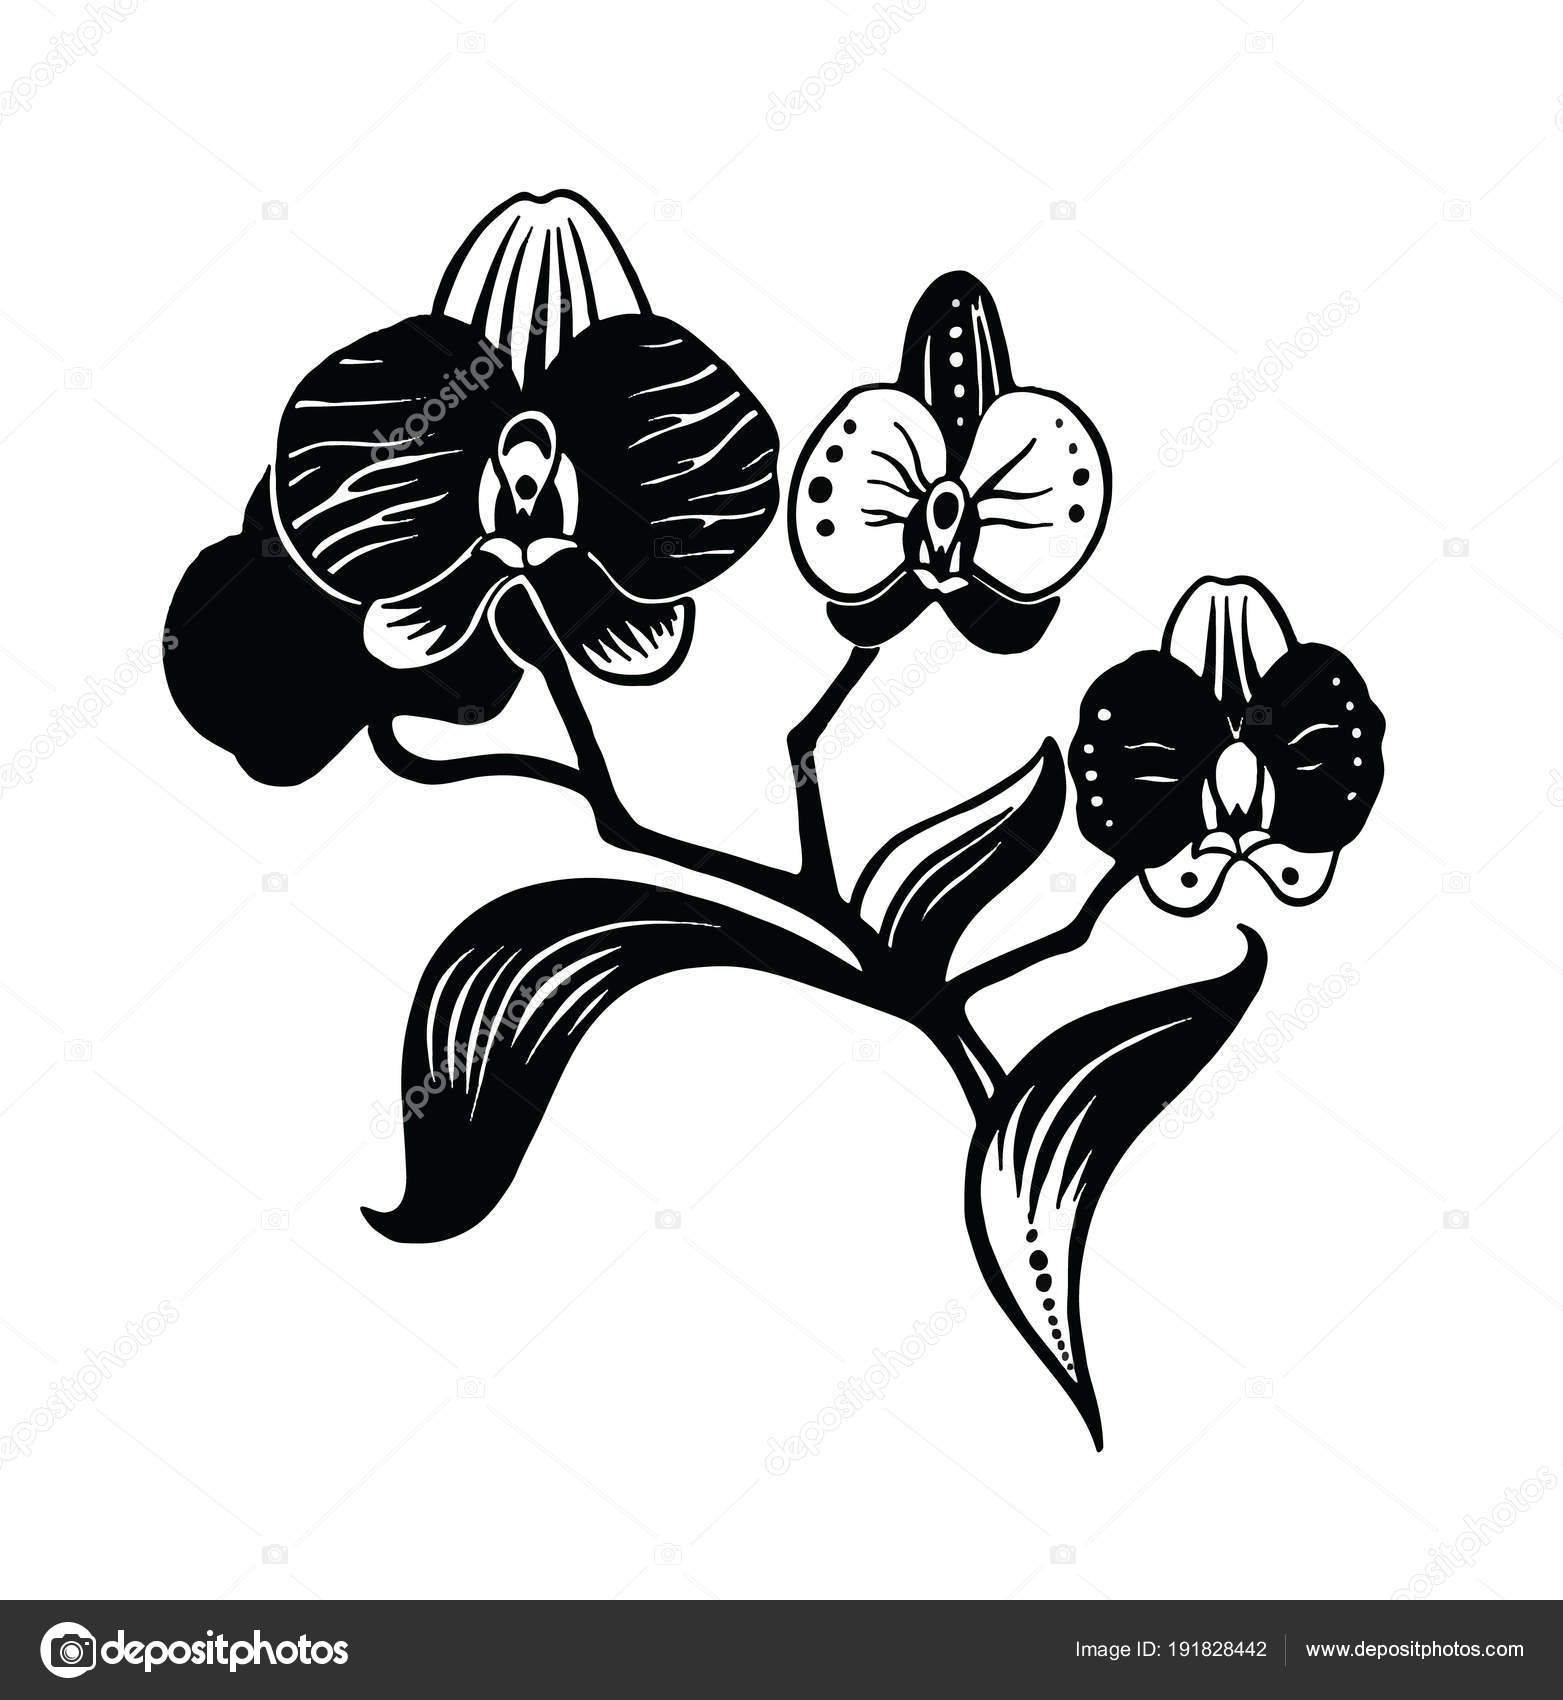 Dessin d'orchidée pour tatouage